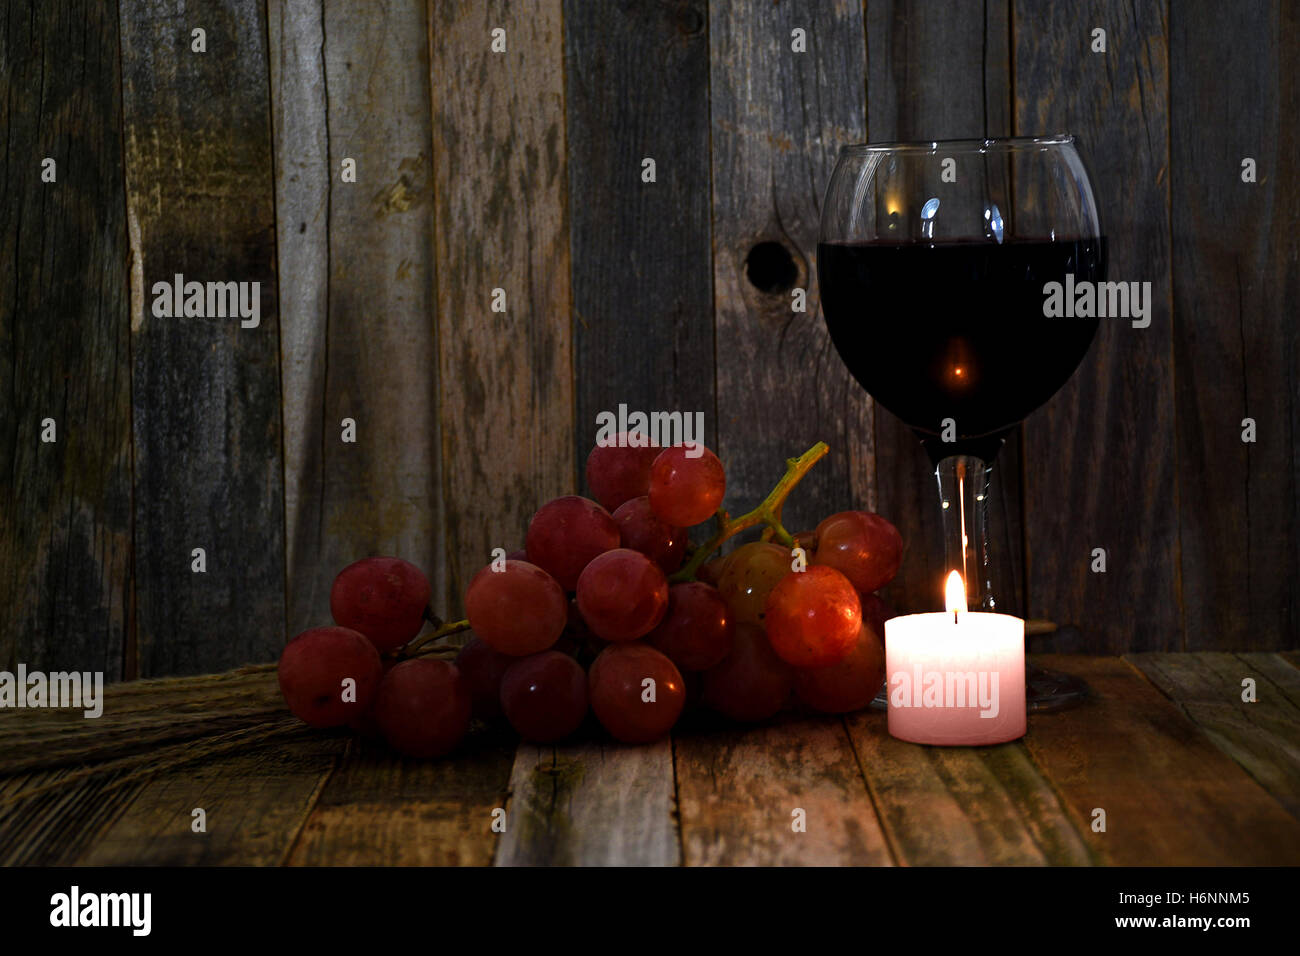 Vino rosso in vetro con uva e candela incandescente su legno rustico Foto Stock